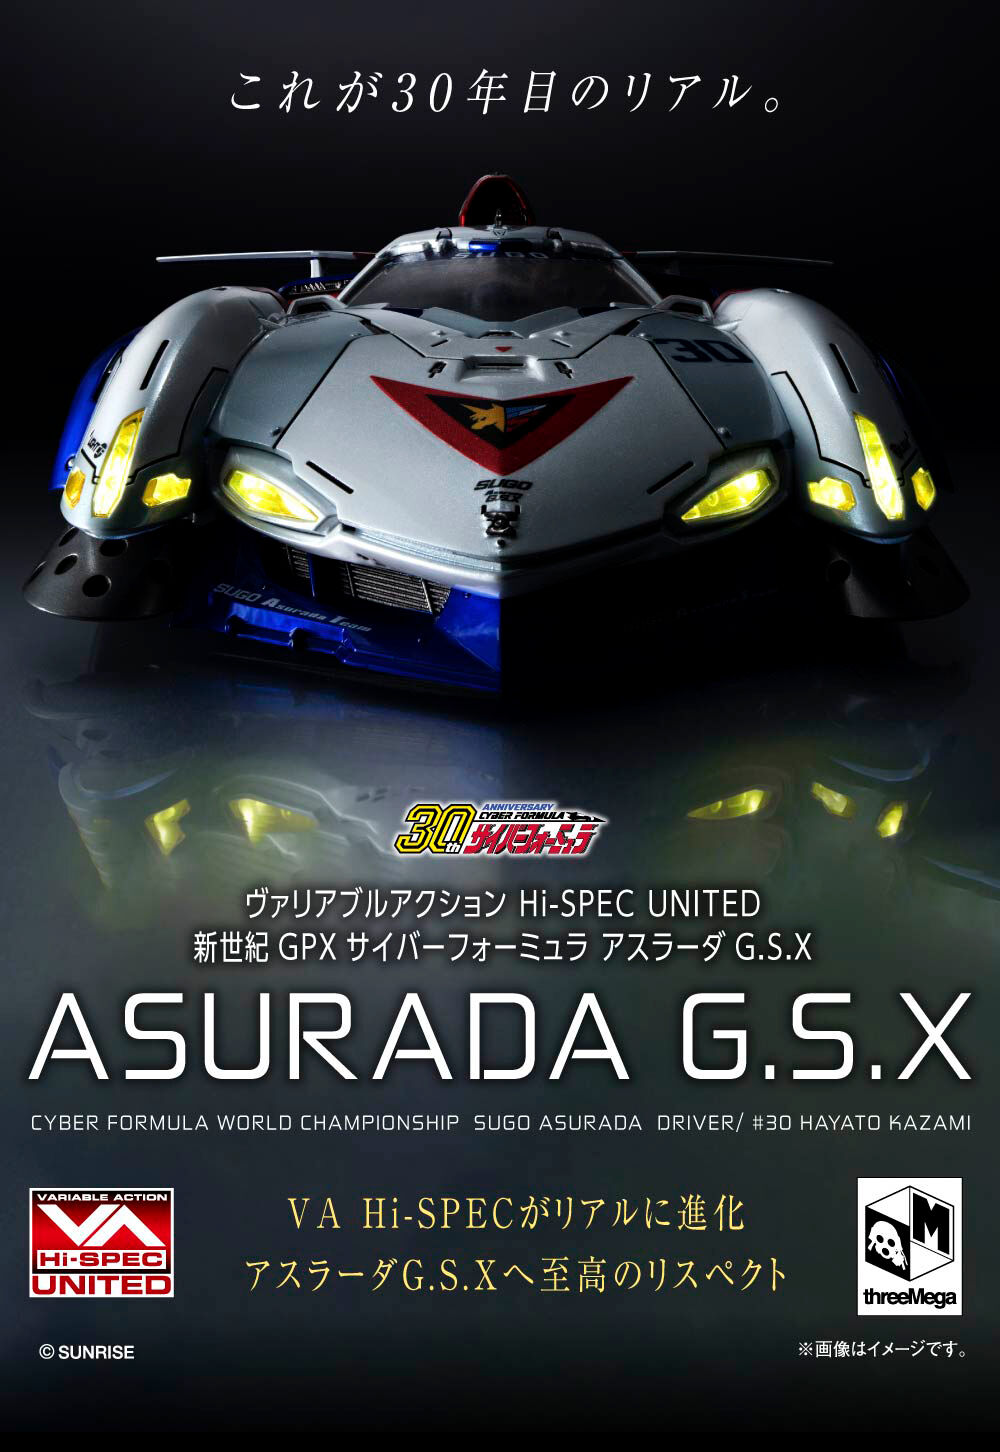 【限定販売】ヴァリアブルアクション Hi-SPEC UNITED『アスラーダG.S.X』新世紀GPXサイバーフォーミュラ 1/18 完成品モデル-001